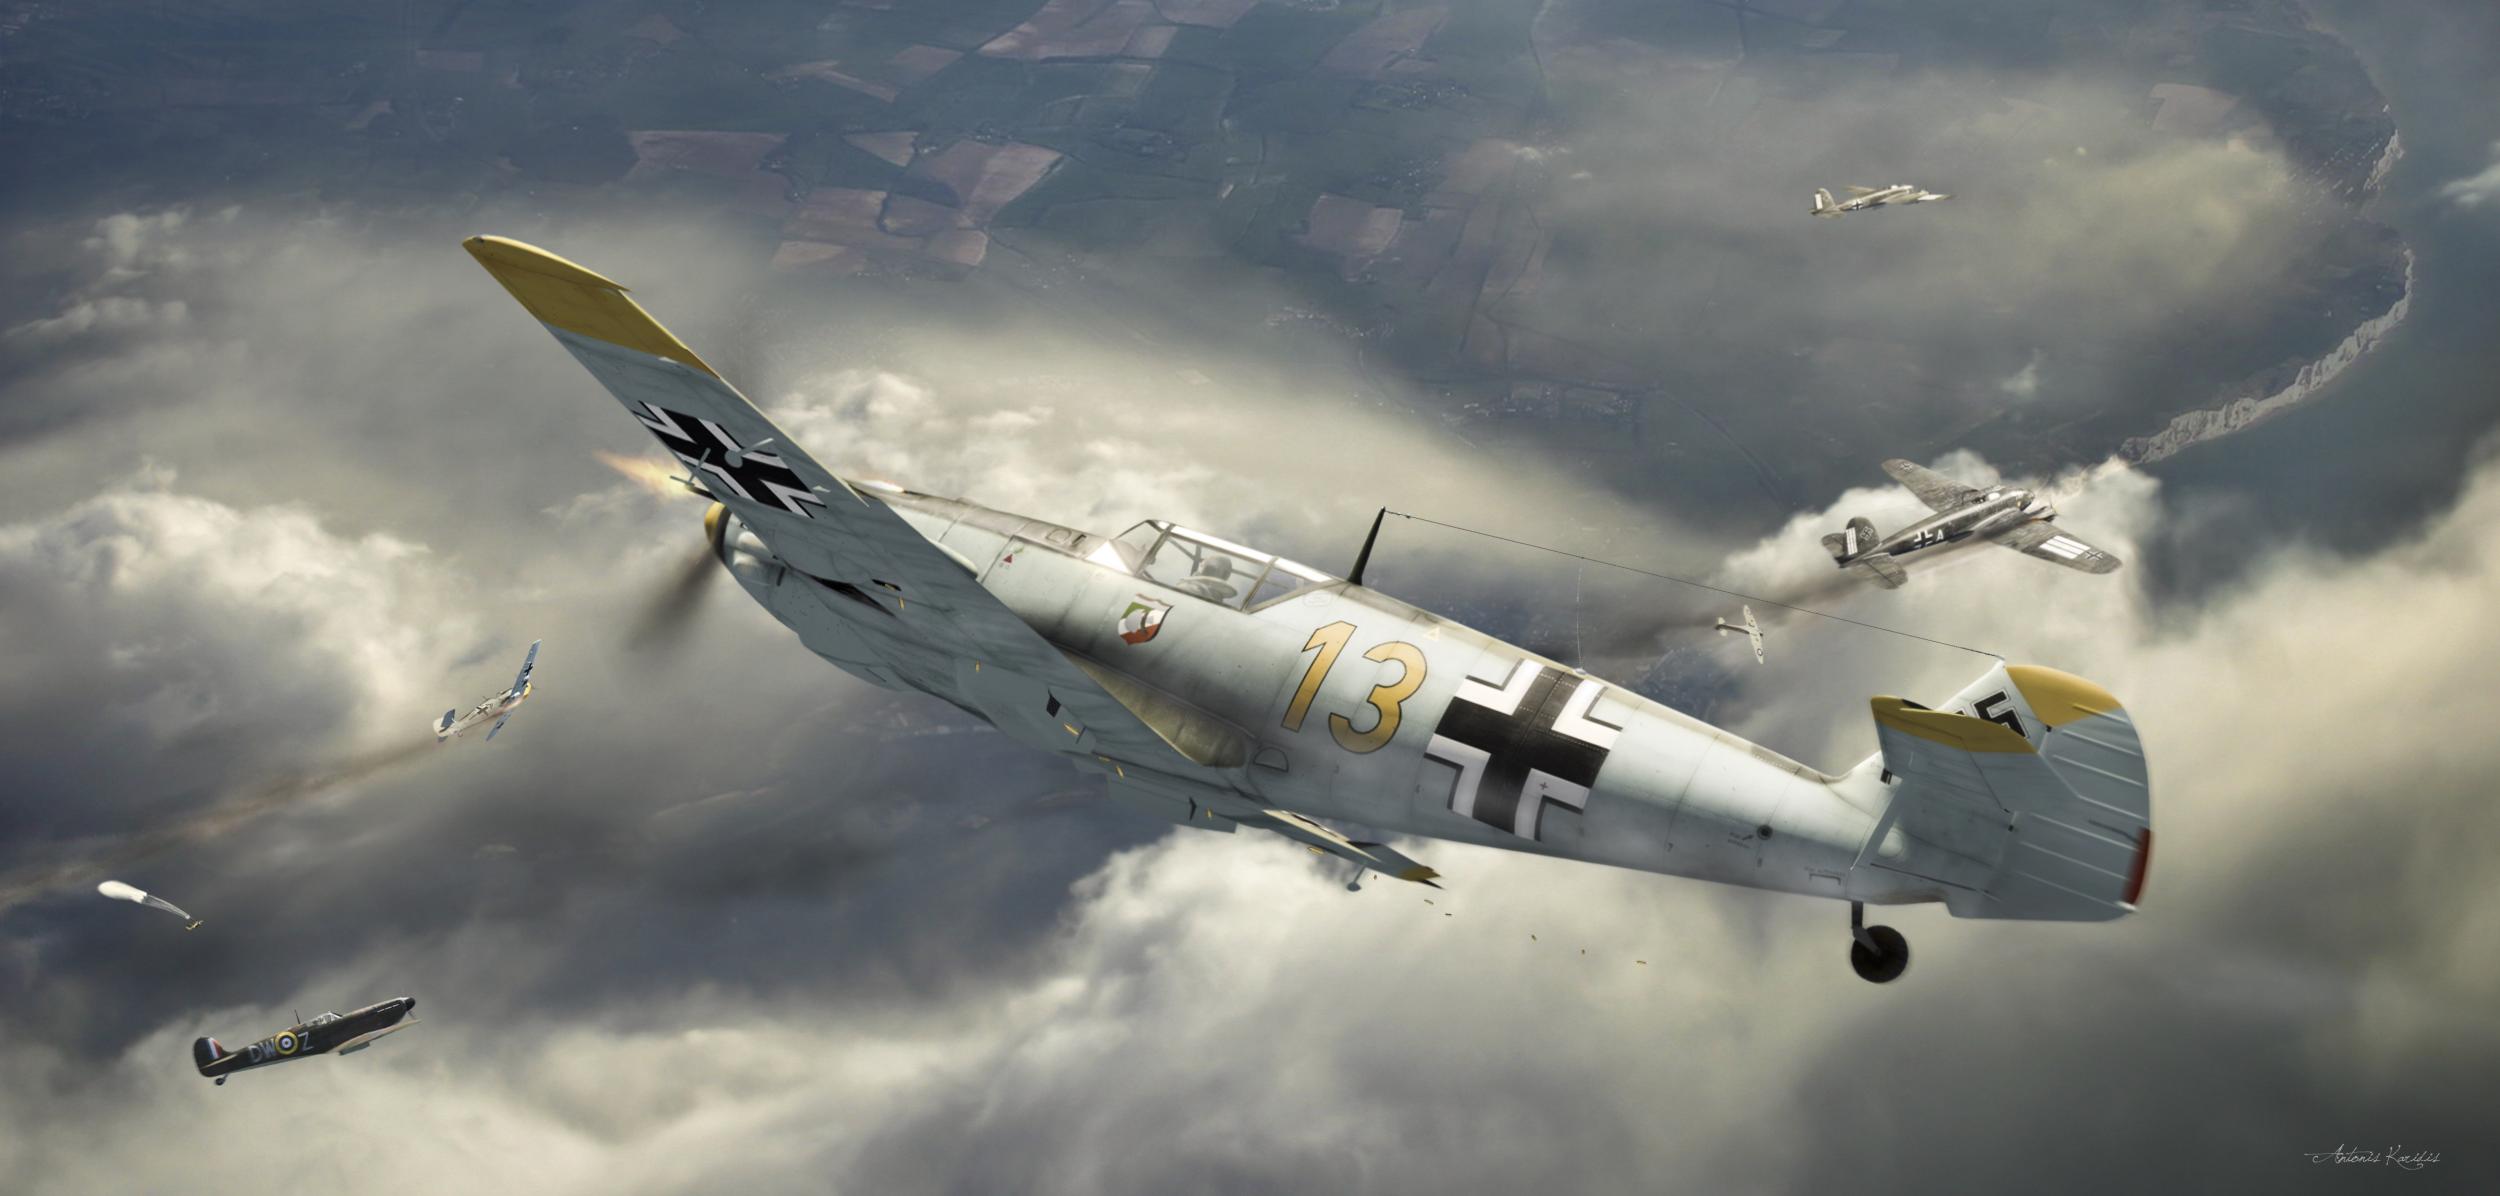 Messerschmitt Bf-109 E Full HD Wallpaper and Background Image